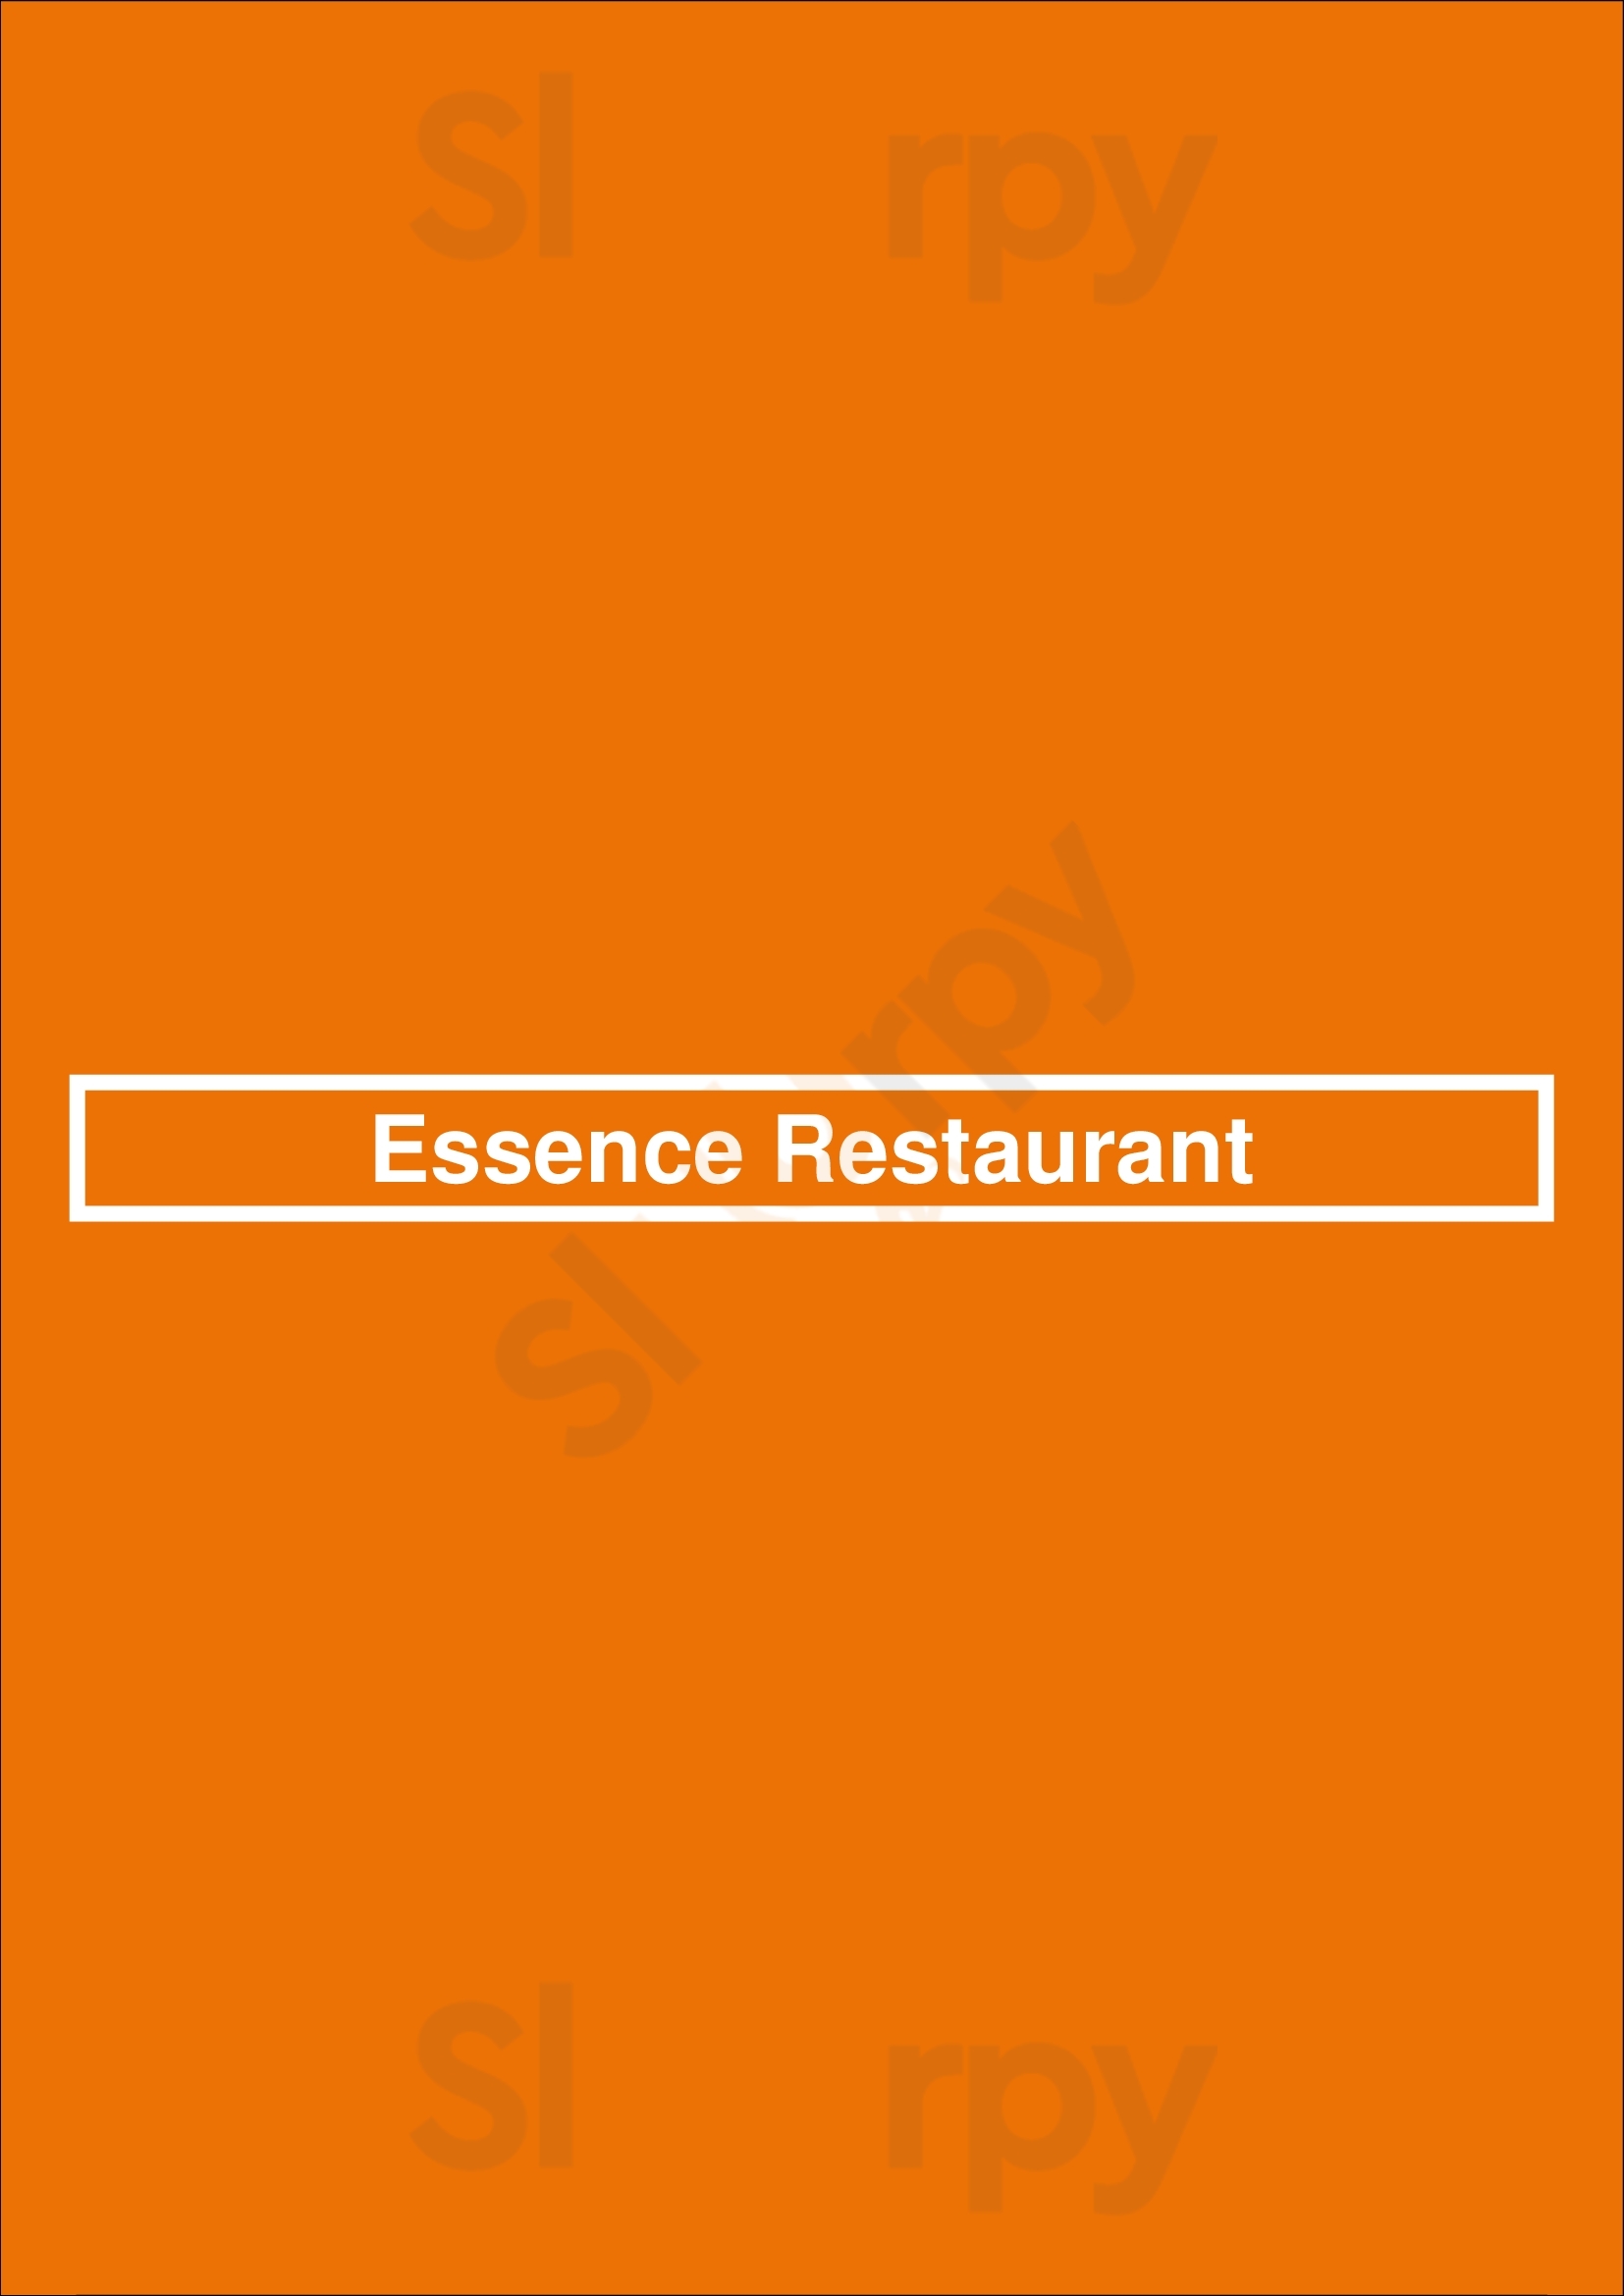 Essence Restaurant Calgary Menu - 1